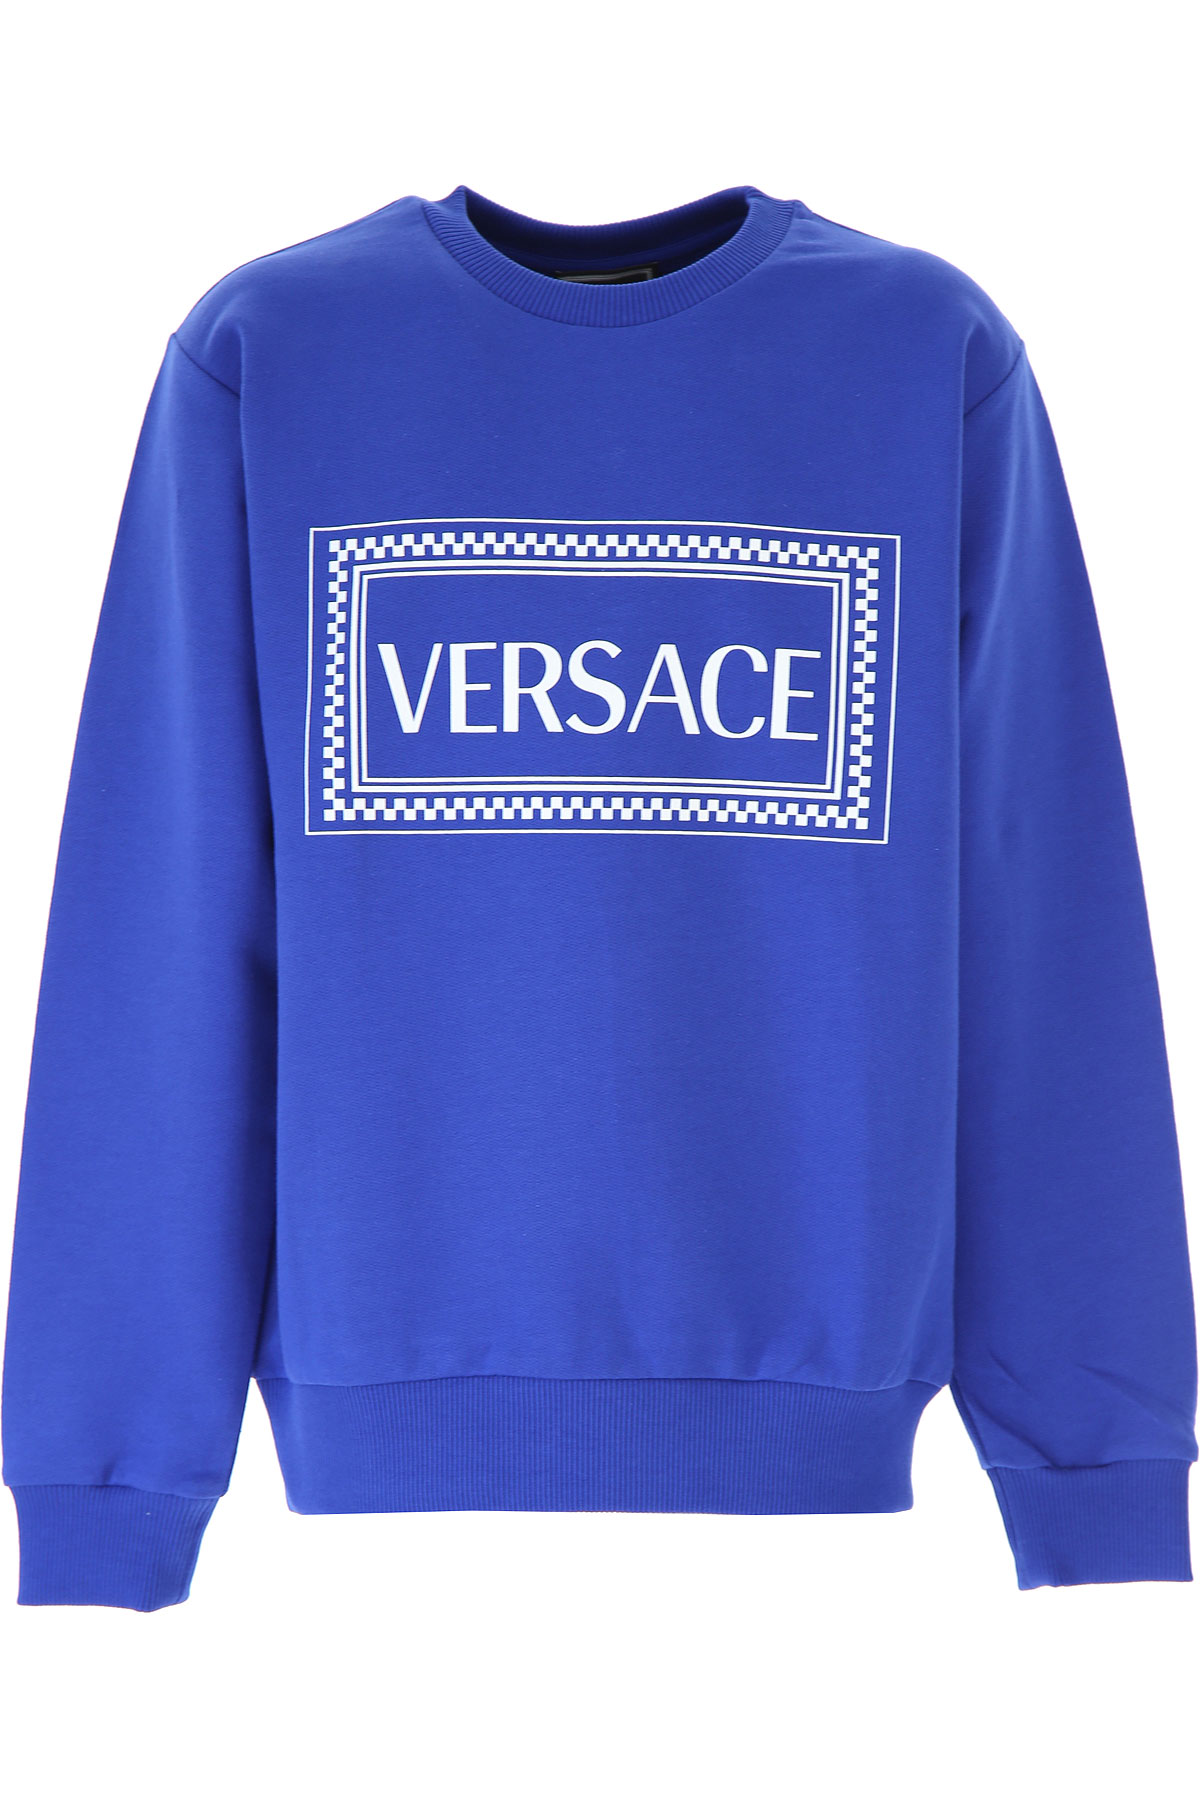 Versace Kinder Sweatshirt & Kapuzenpullover für Jungen Günstig im Sale, Blau, Baumwolle, 2017, 10Y 12Y 8Y